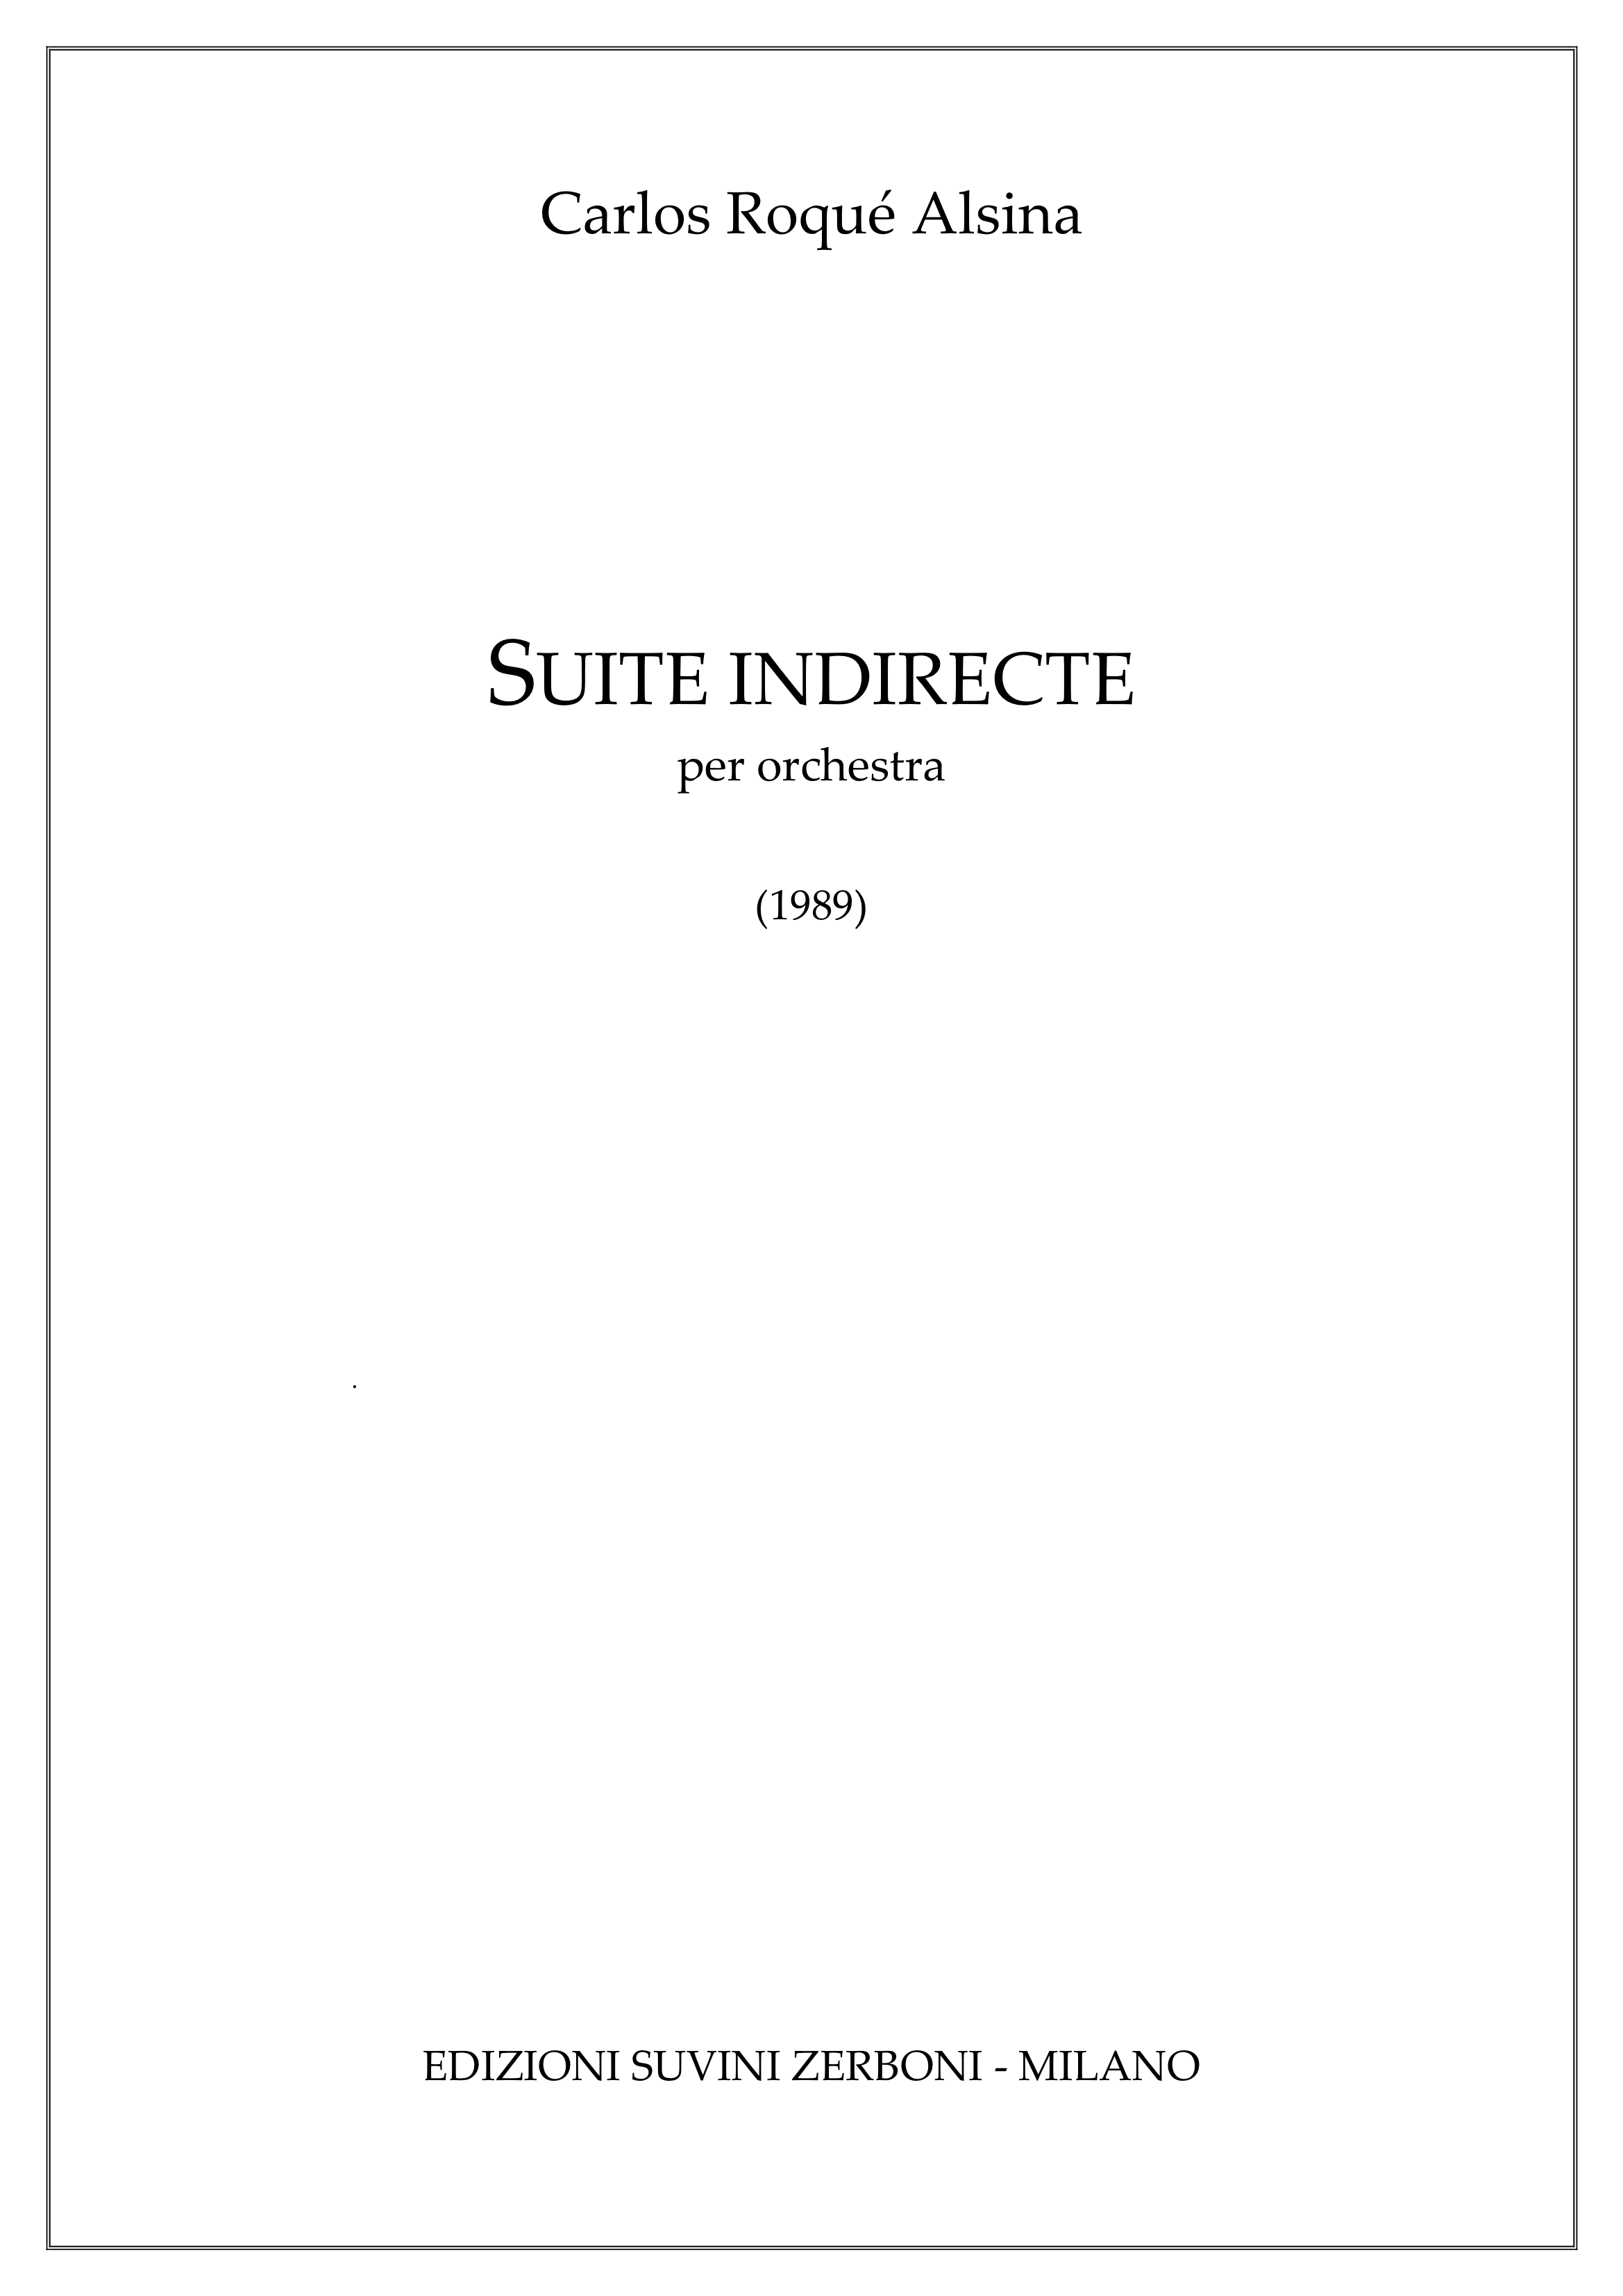 Suite indirecte_Alsina 1